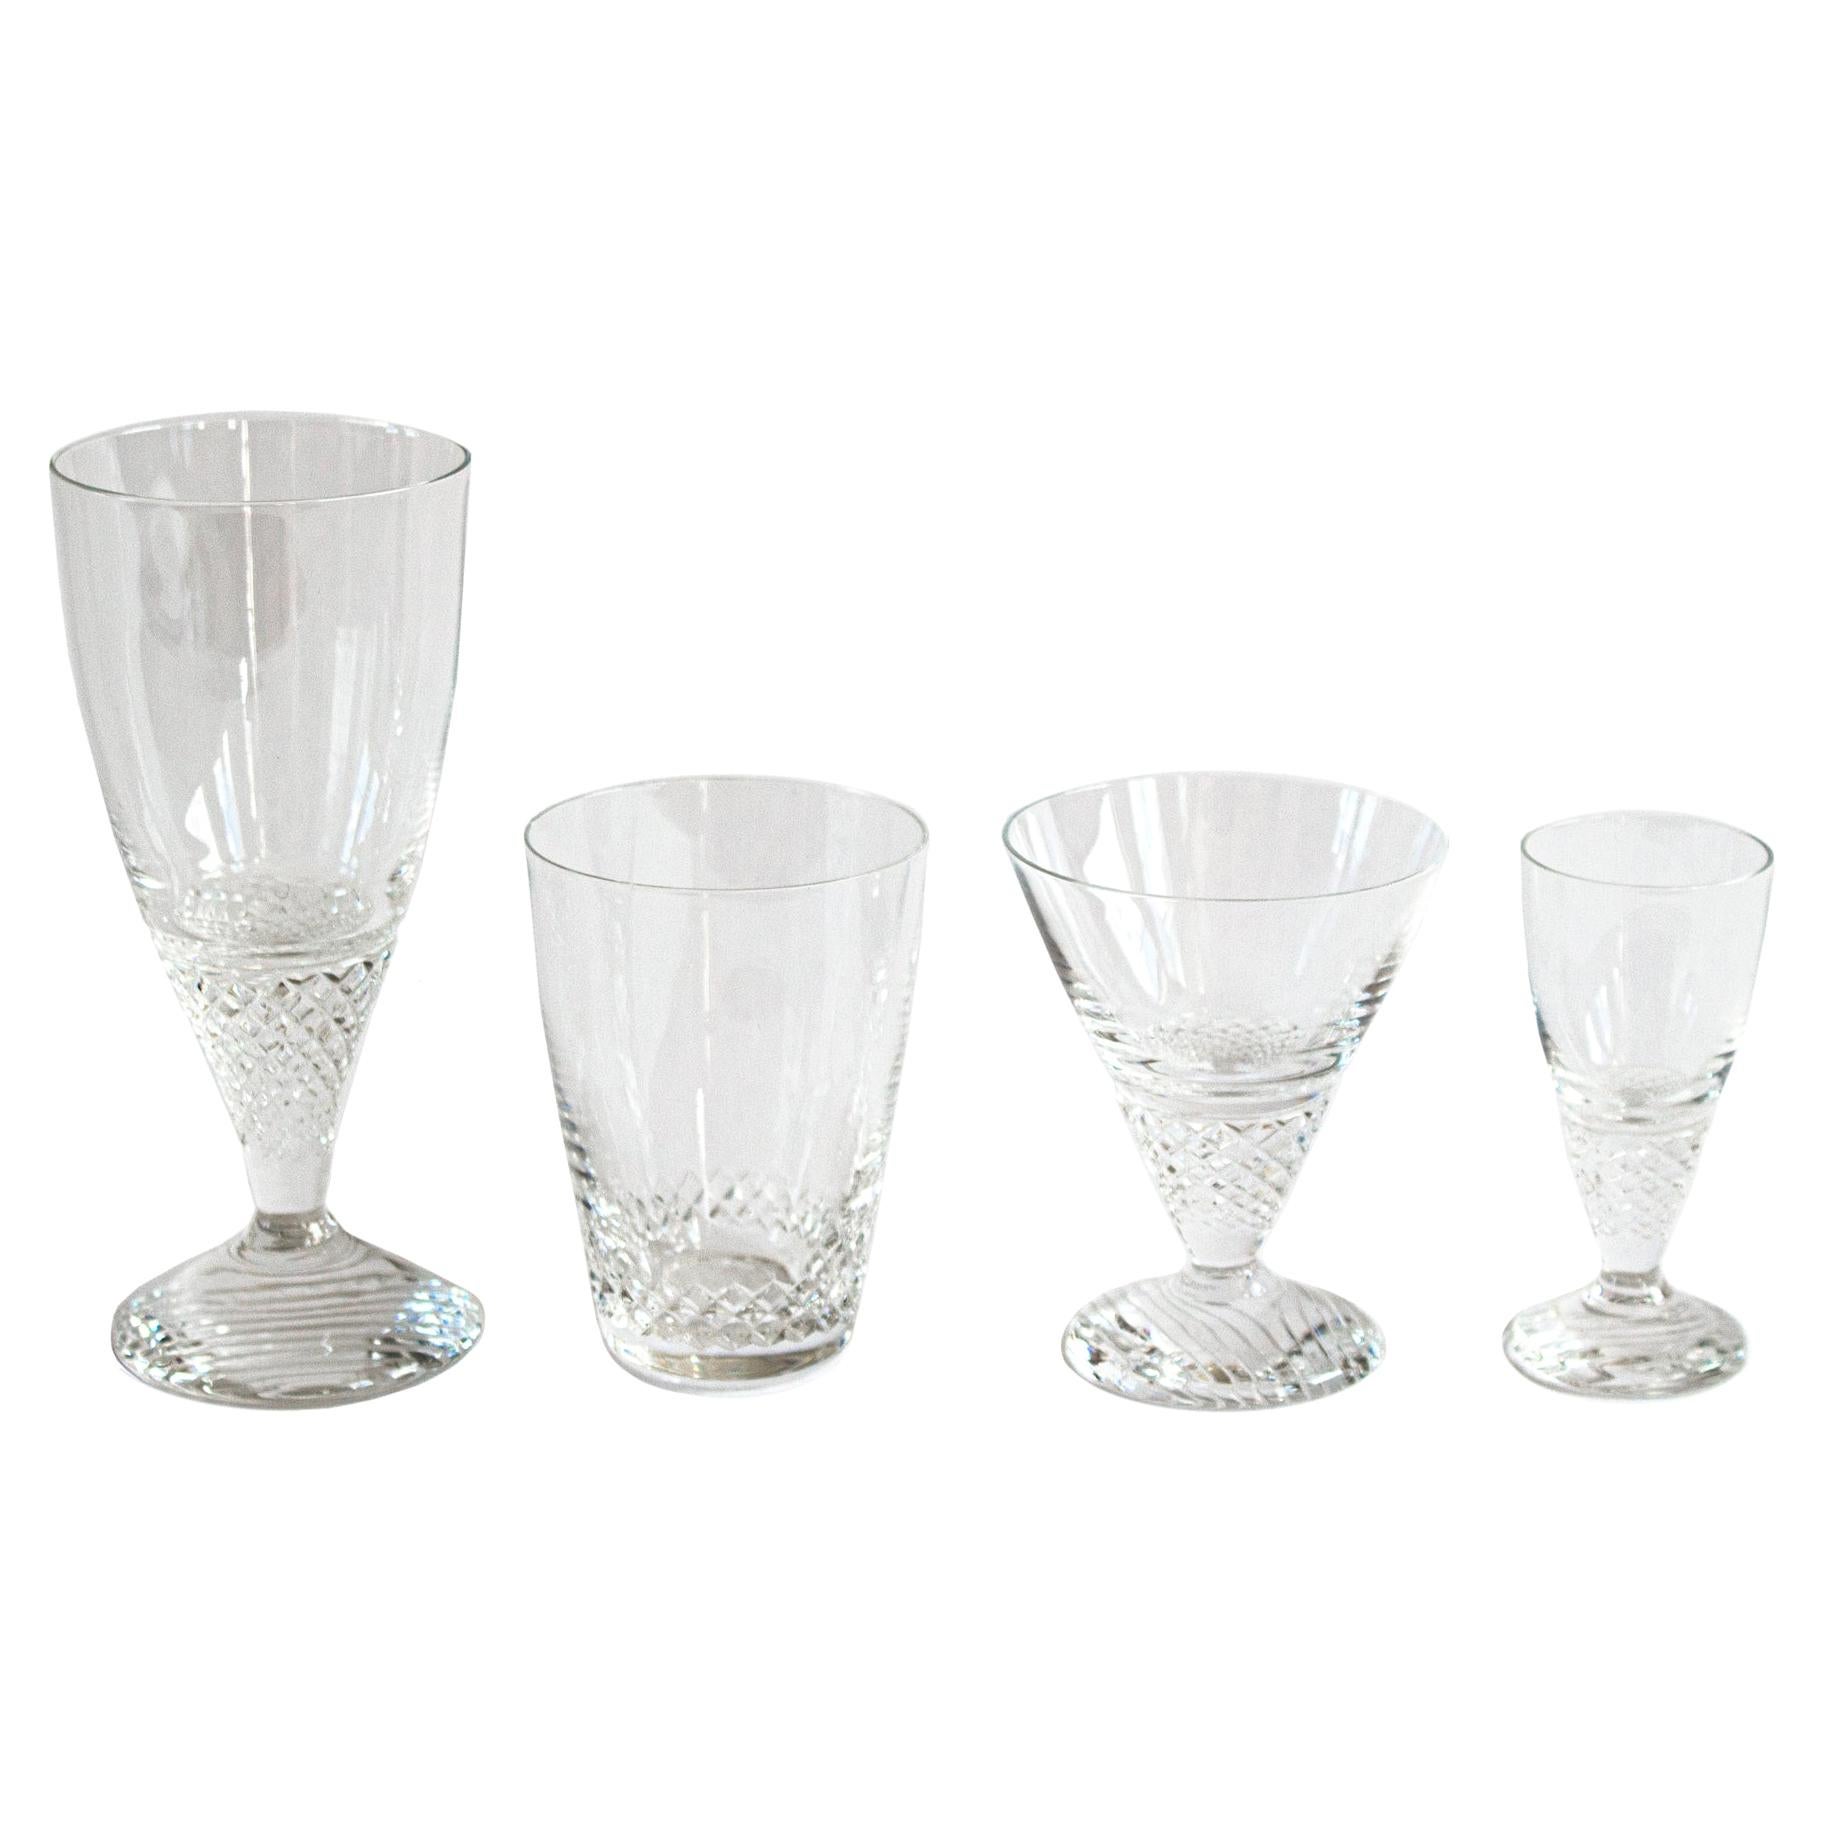 Scandinavian Modern Crystal Glass Designed by Ingeborg Lundin for Orrefors, 1959